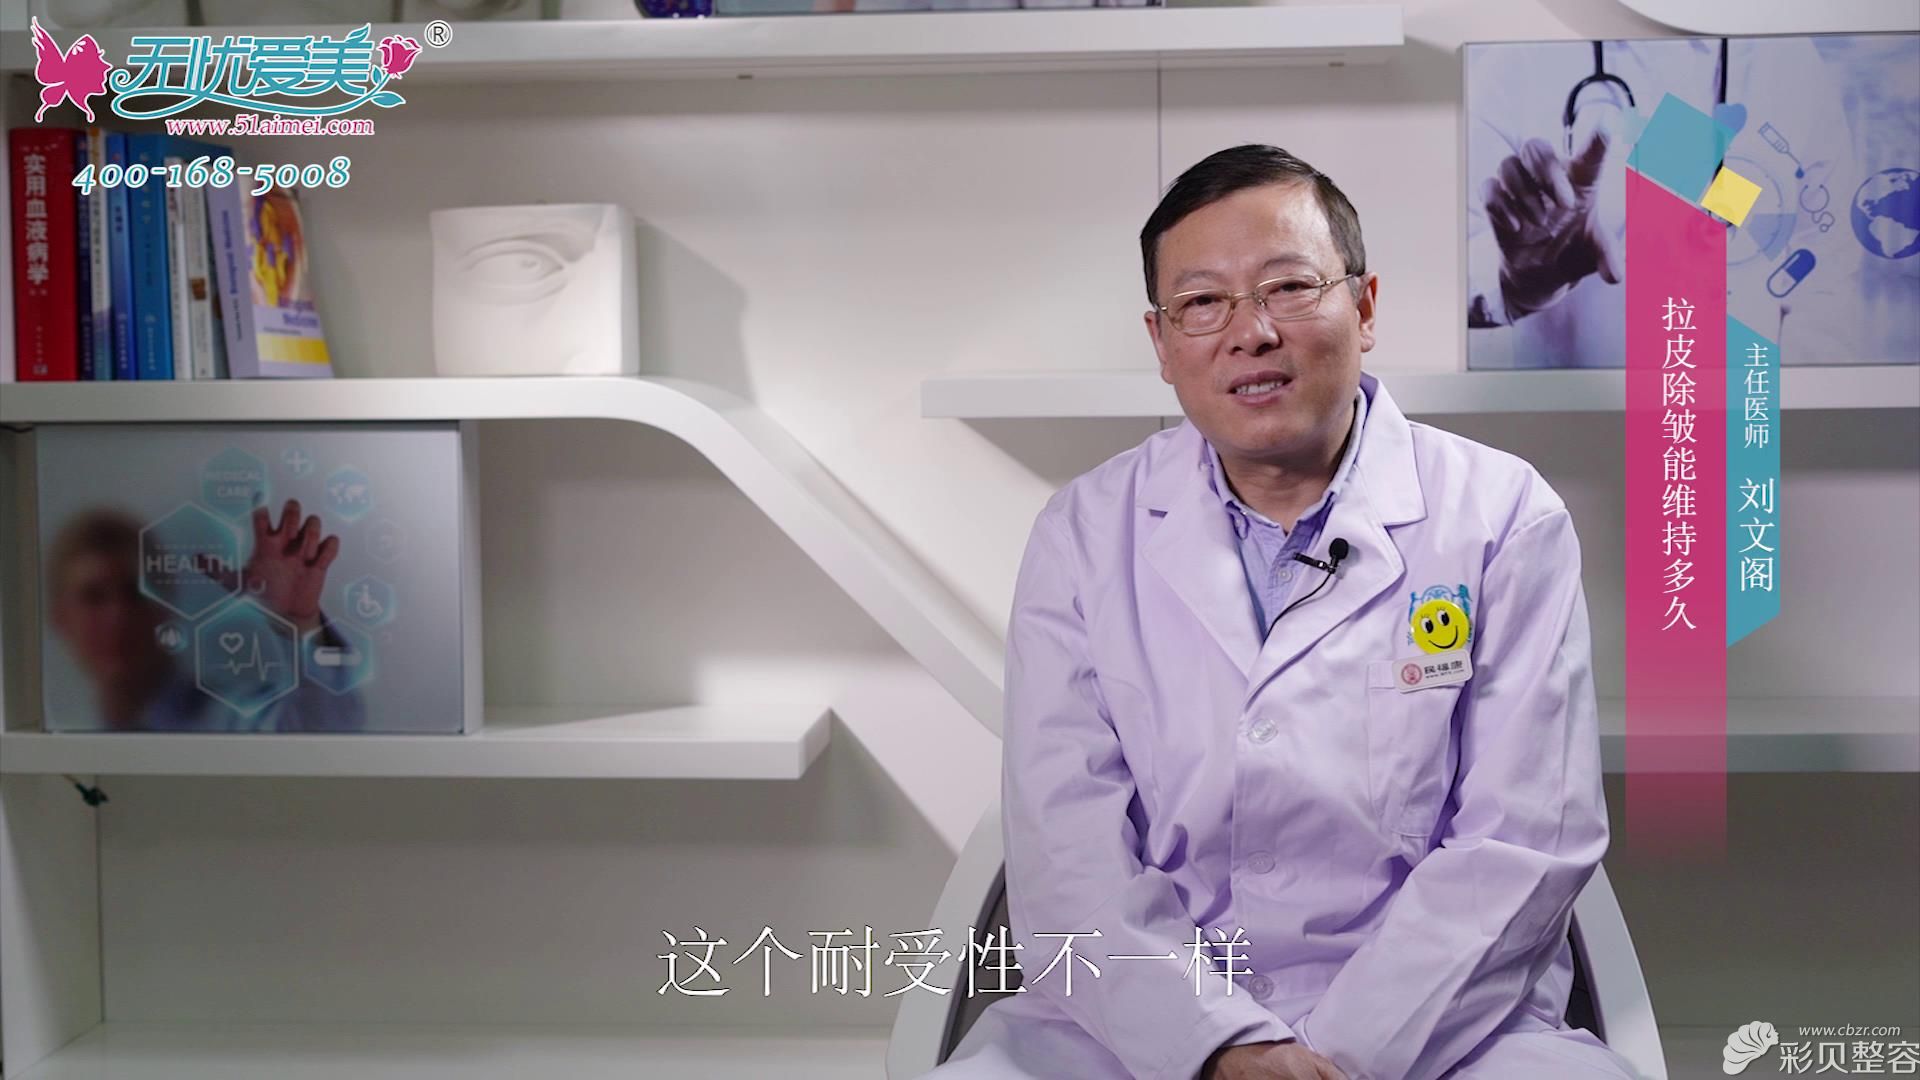 北京海医悦美刘文阁小视频解说拉皮除皱术效果能保持多久